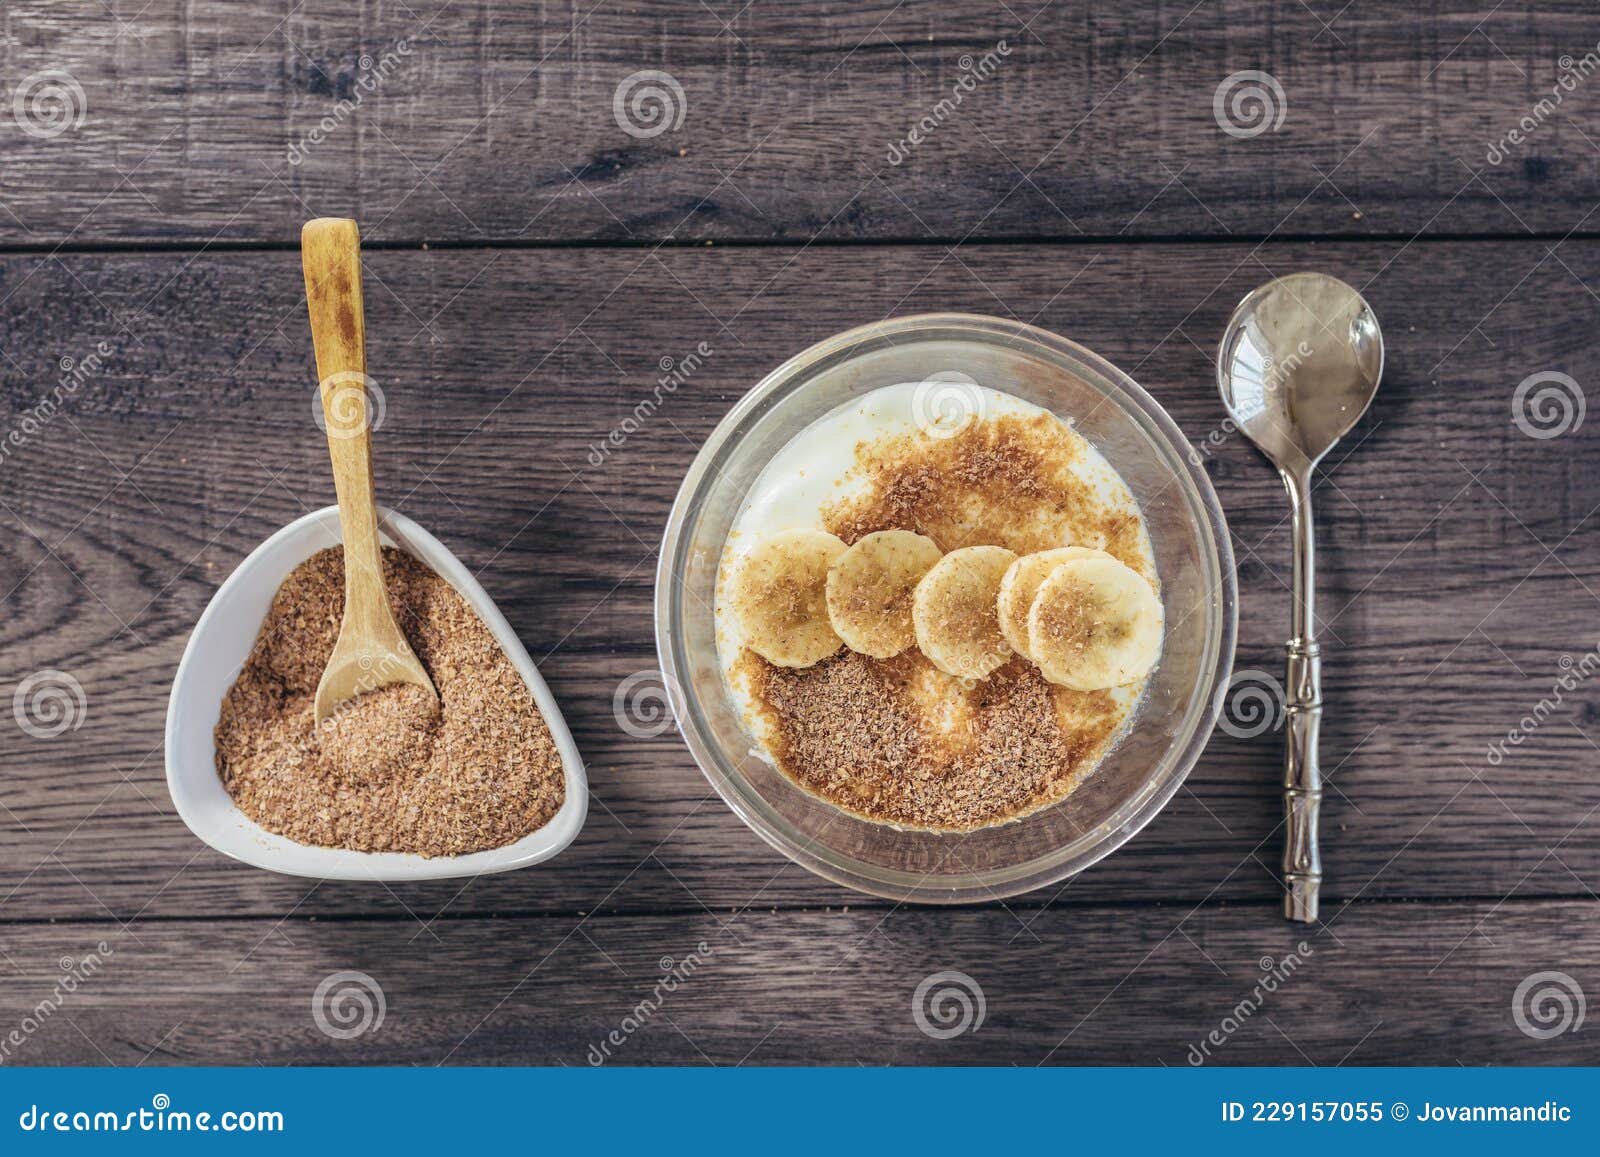 Jogurt Mit Weizenkleie Und Banane Stockbild - Bild von frucht, banane ...